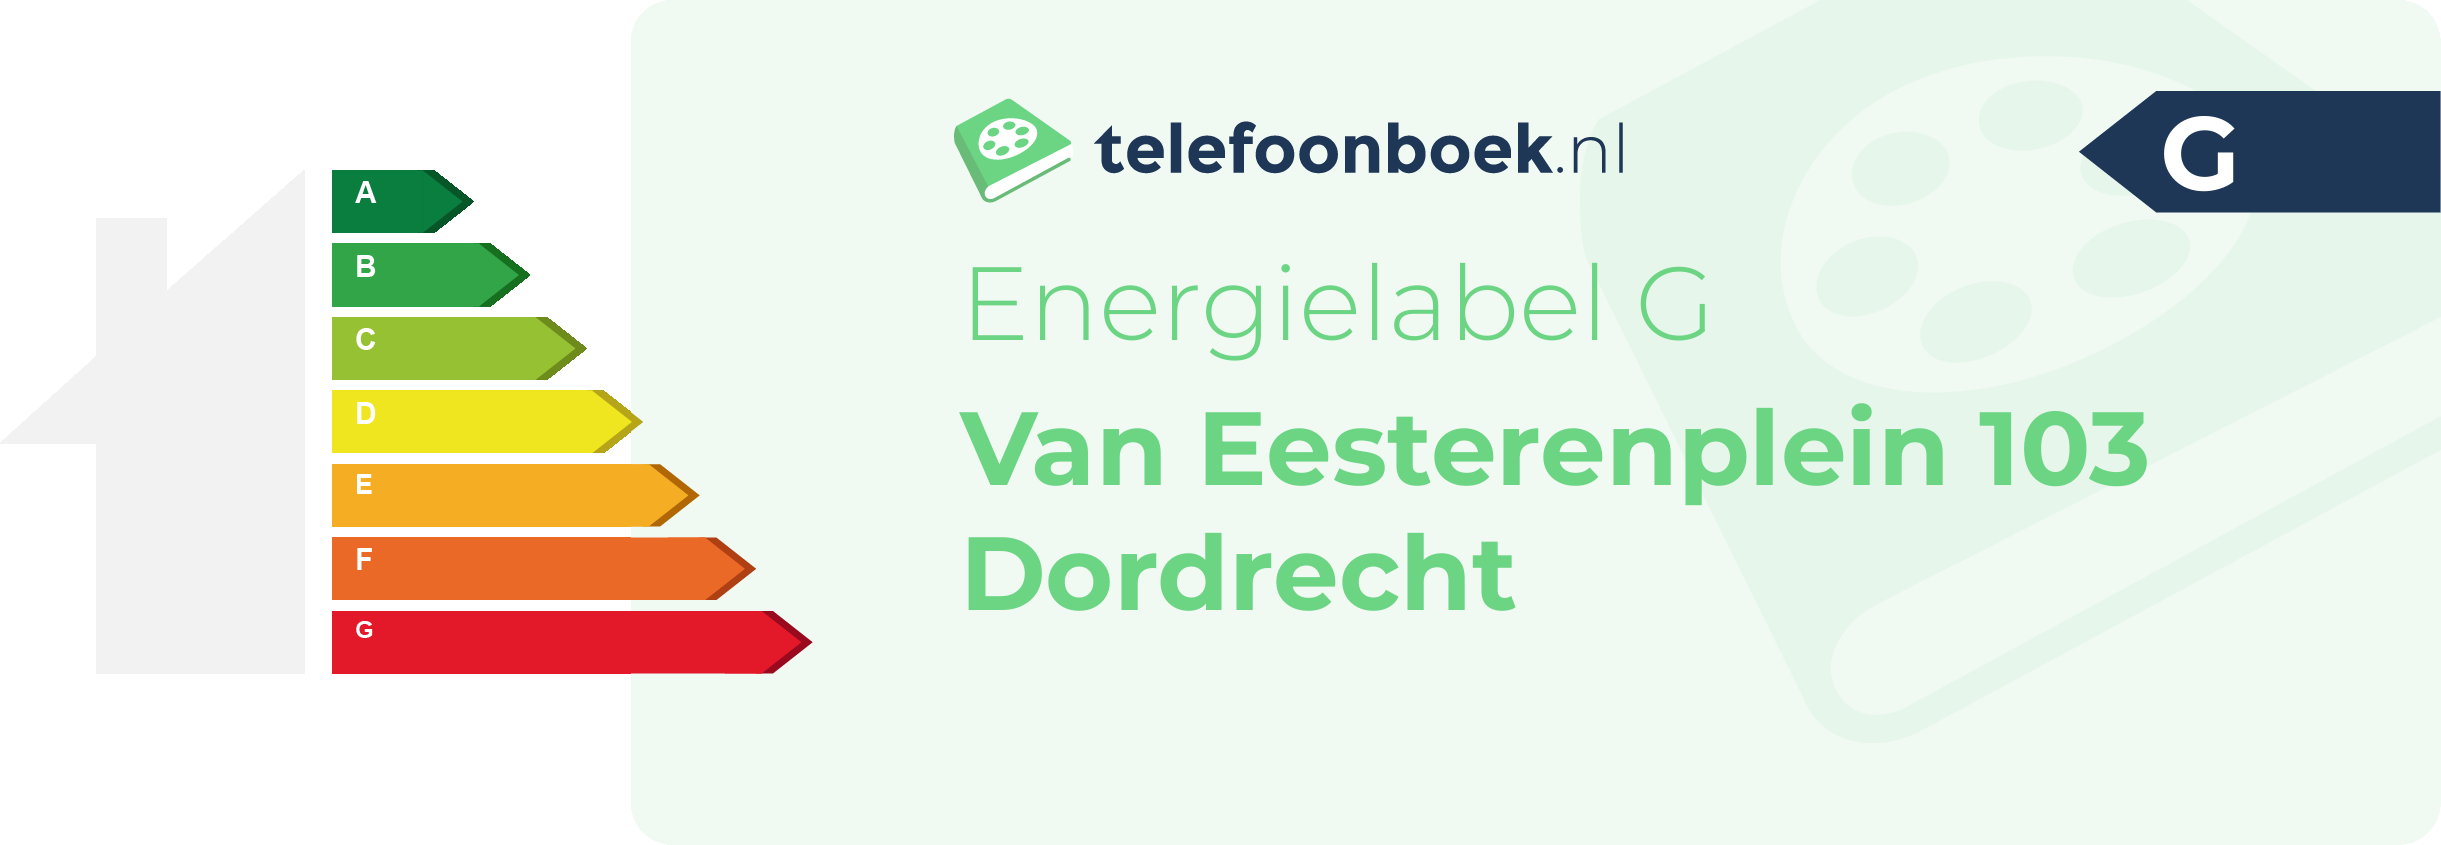 Energielabel Van Eesterenplein 103 Dordrecht